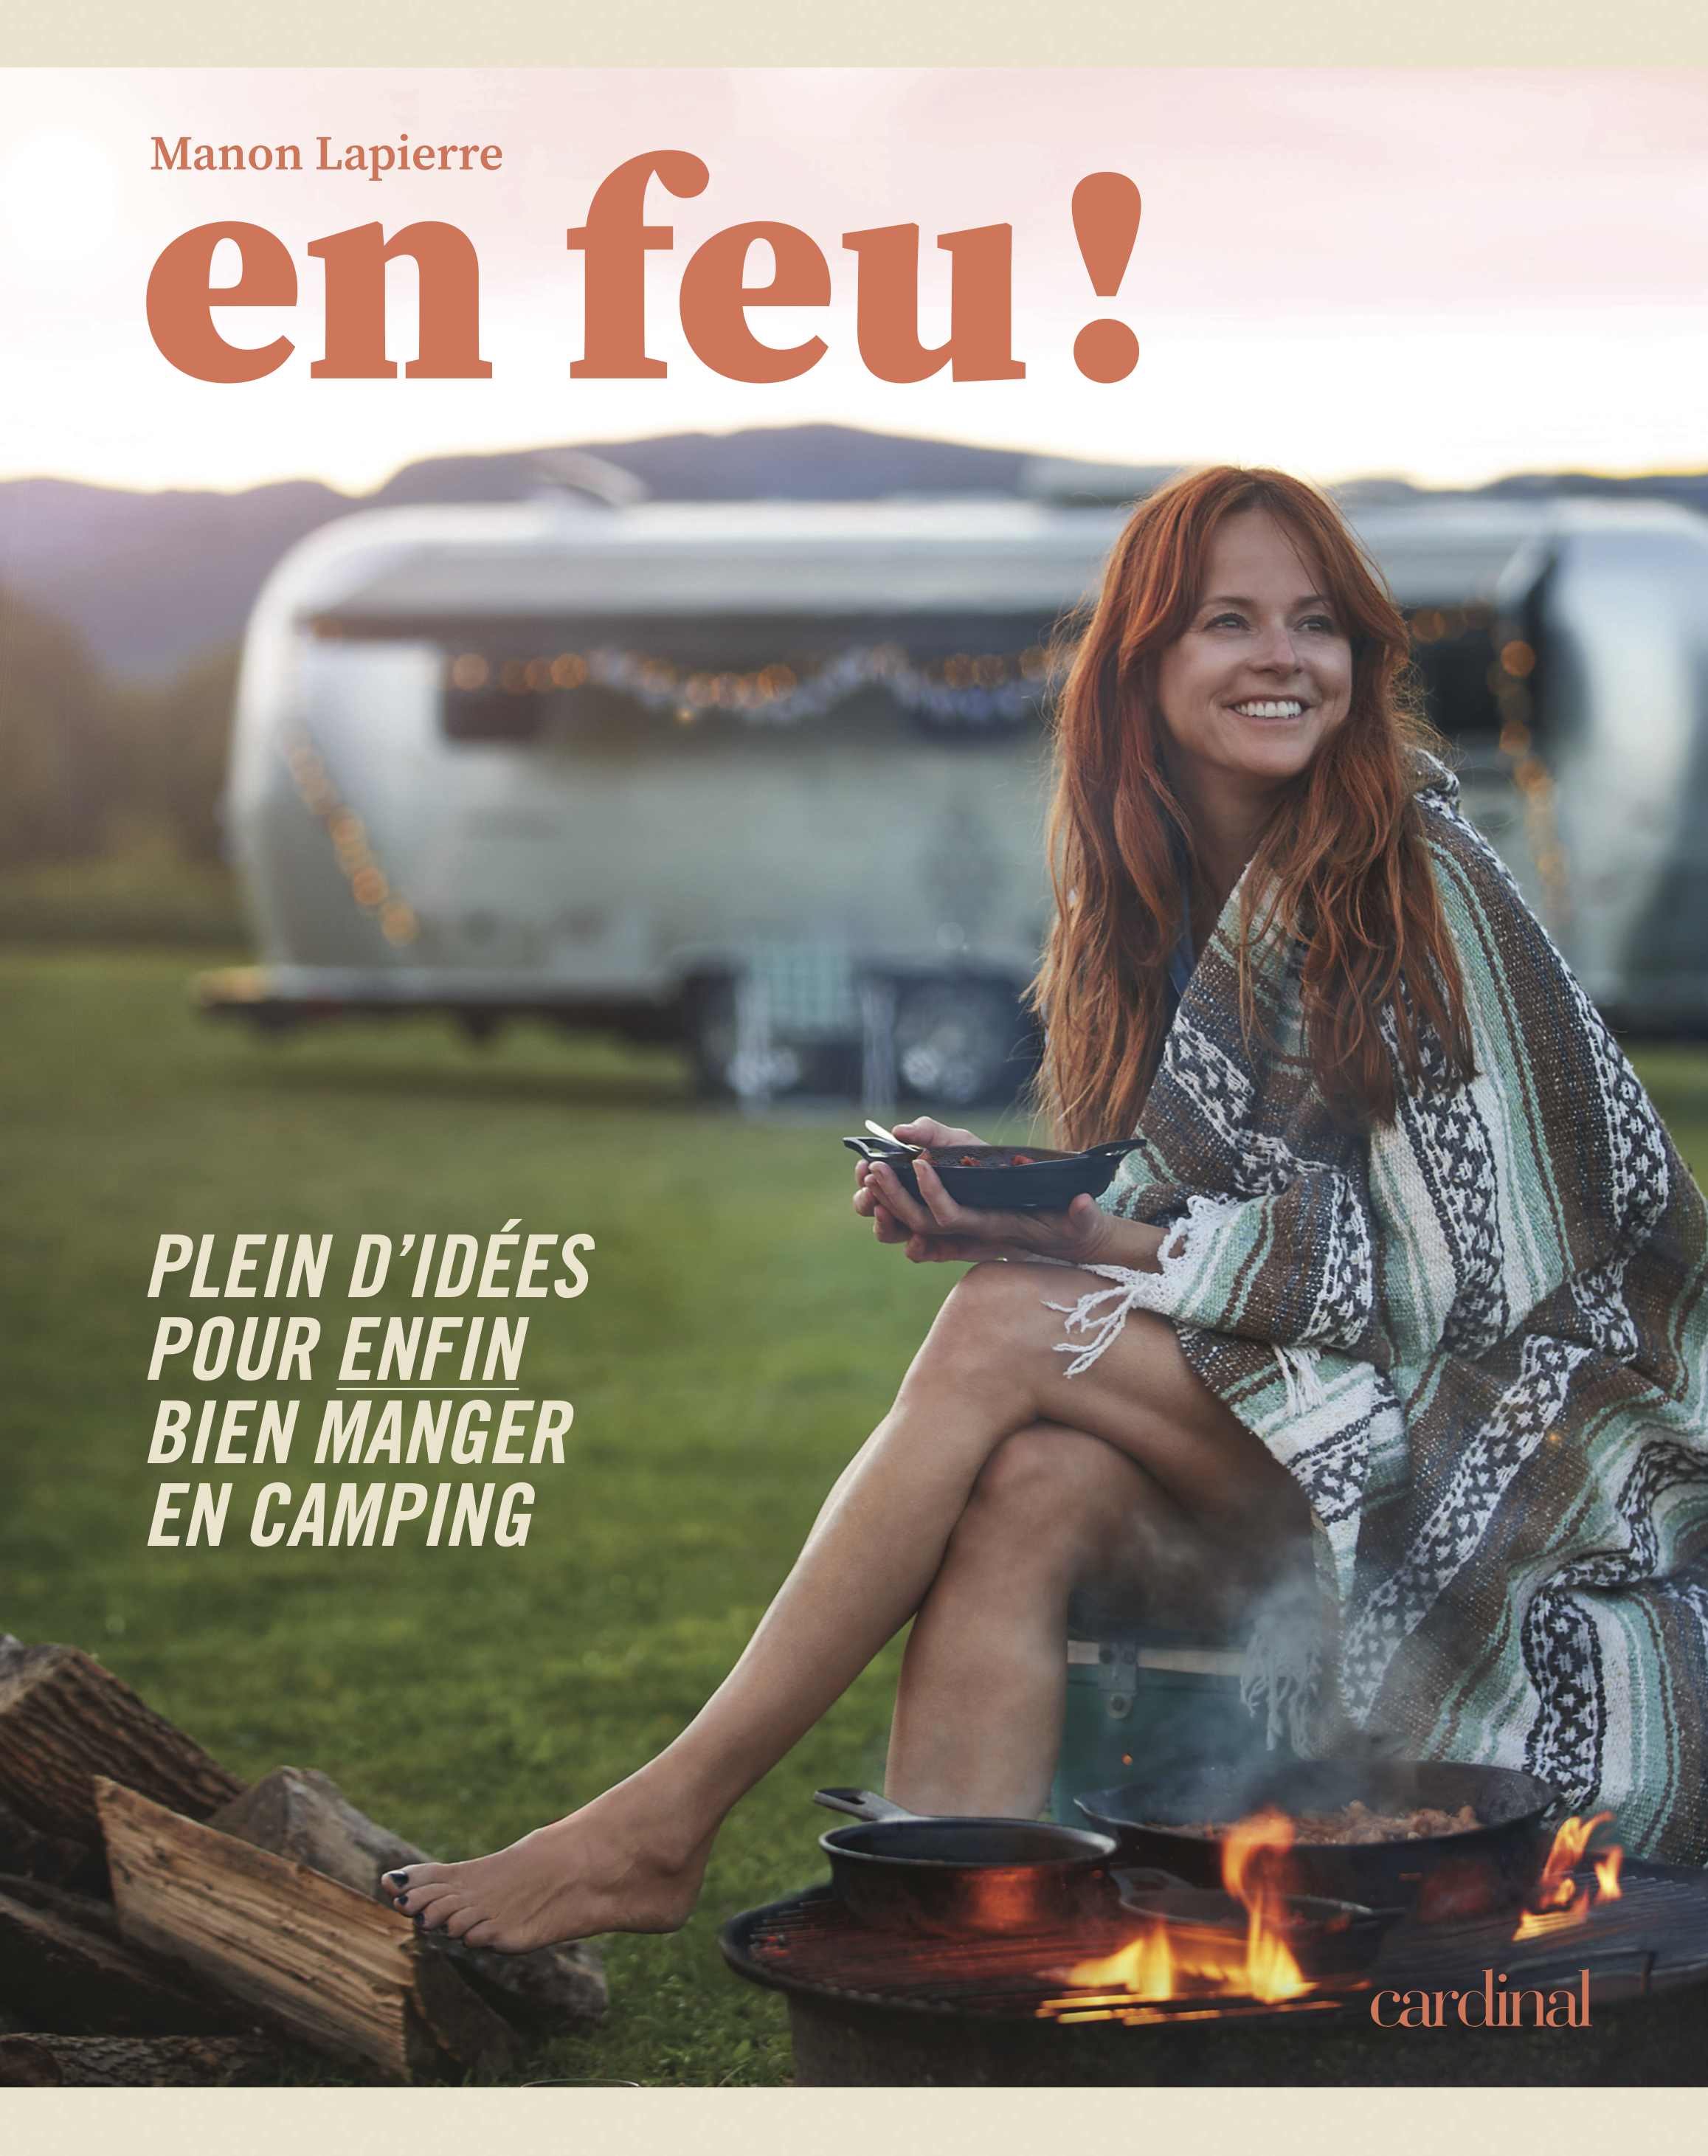 En feu! le nouveau livre de Manon Lapierre avec des recettes cool et délicieuses en camping